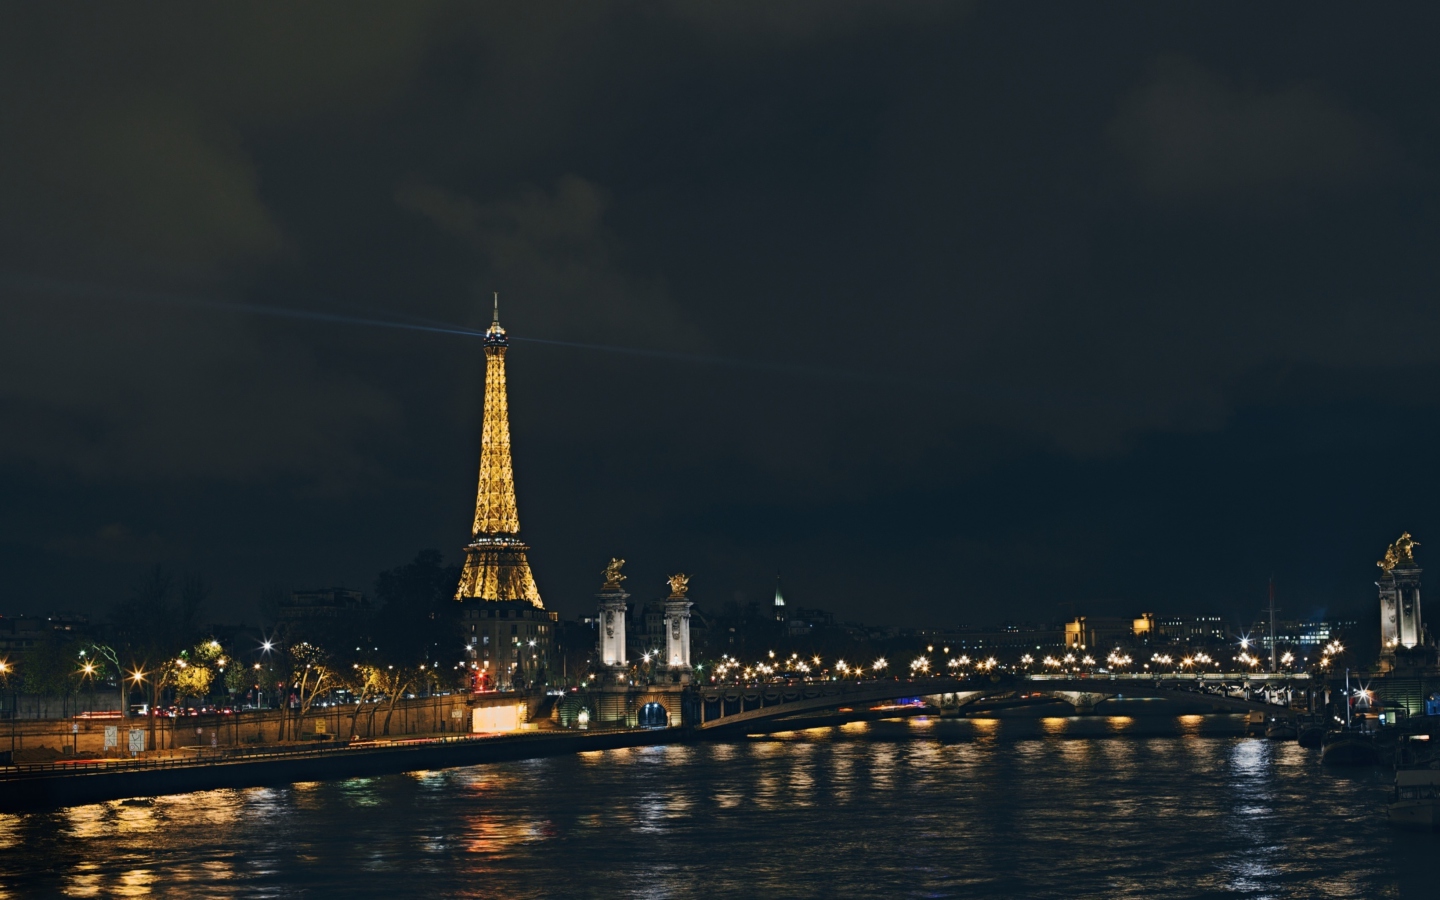 Das Eiffel Tower In Paris France Wallpaper 1440x900